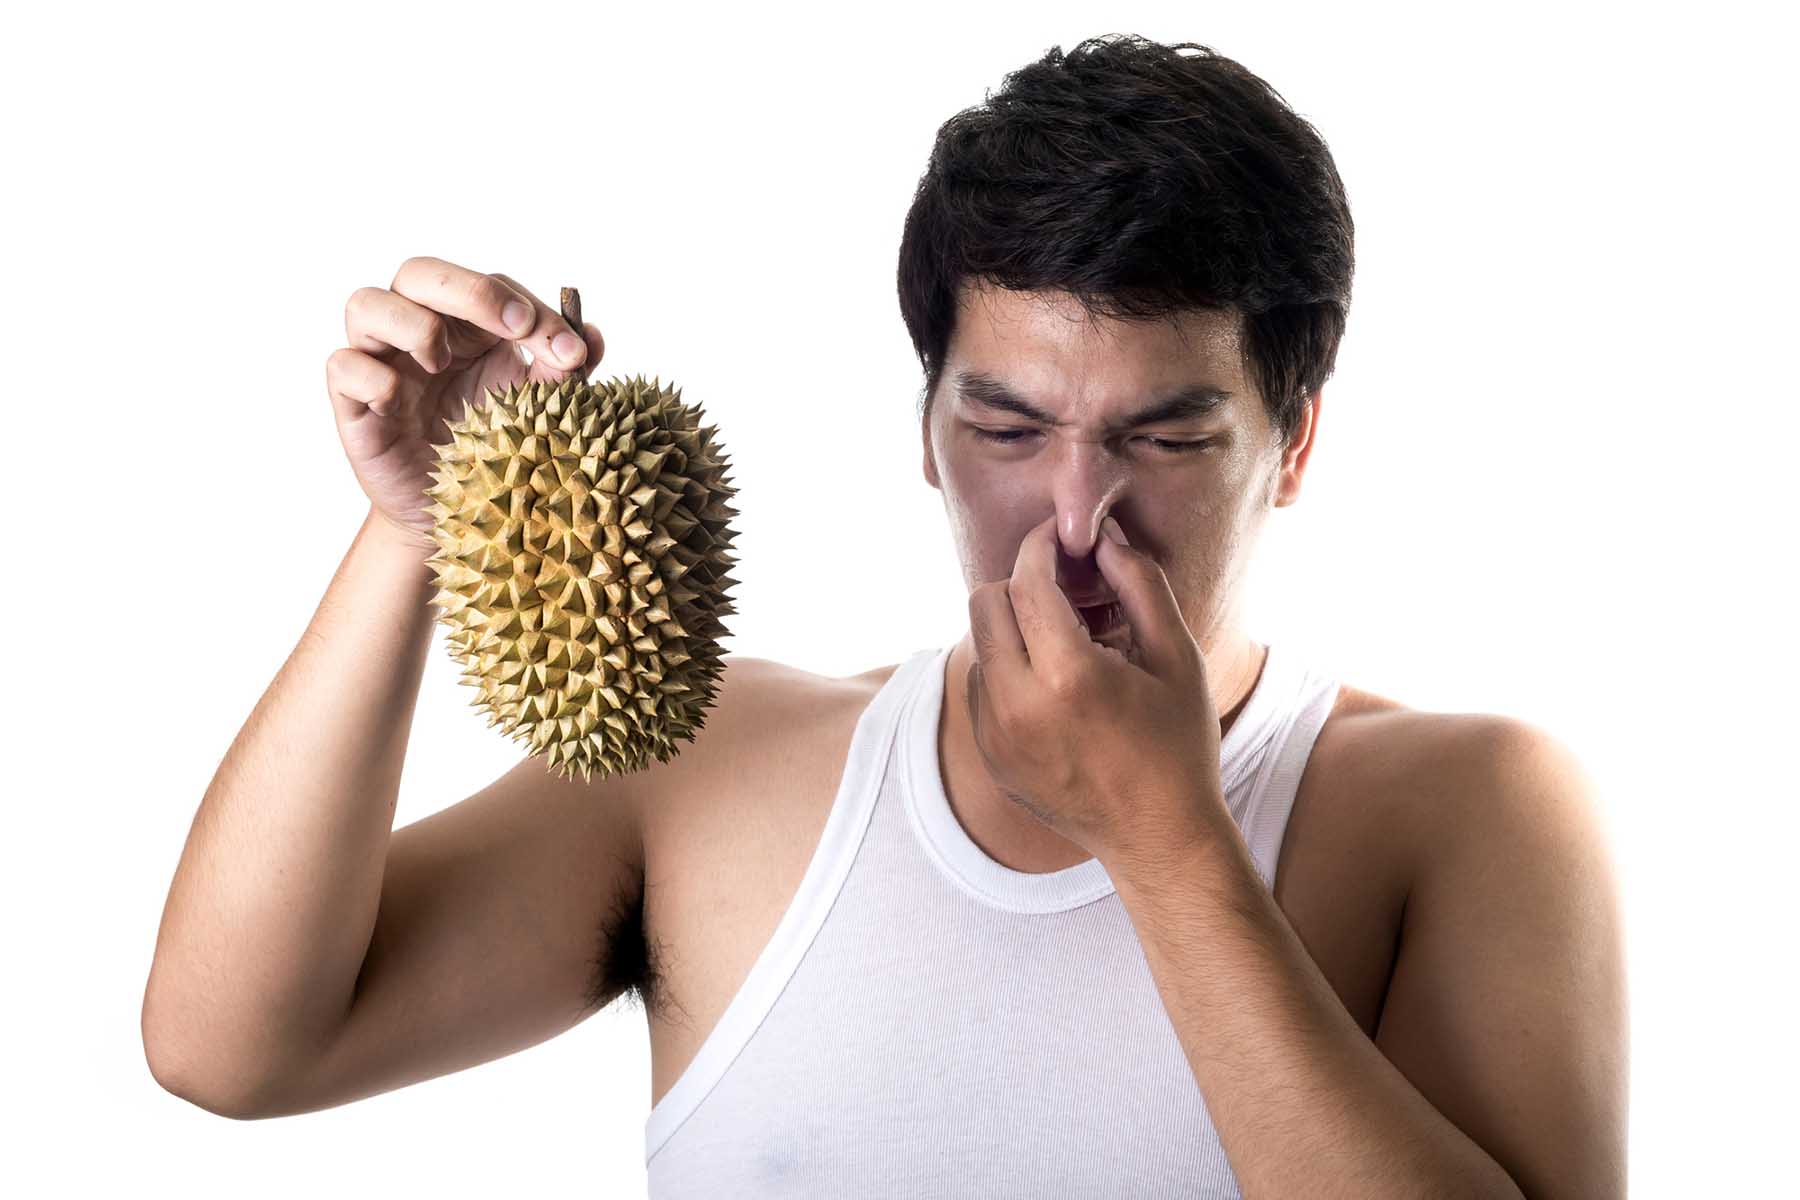 We finally know how durian got so stinky